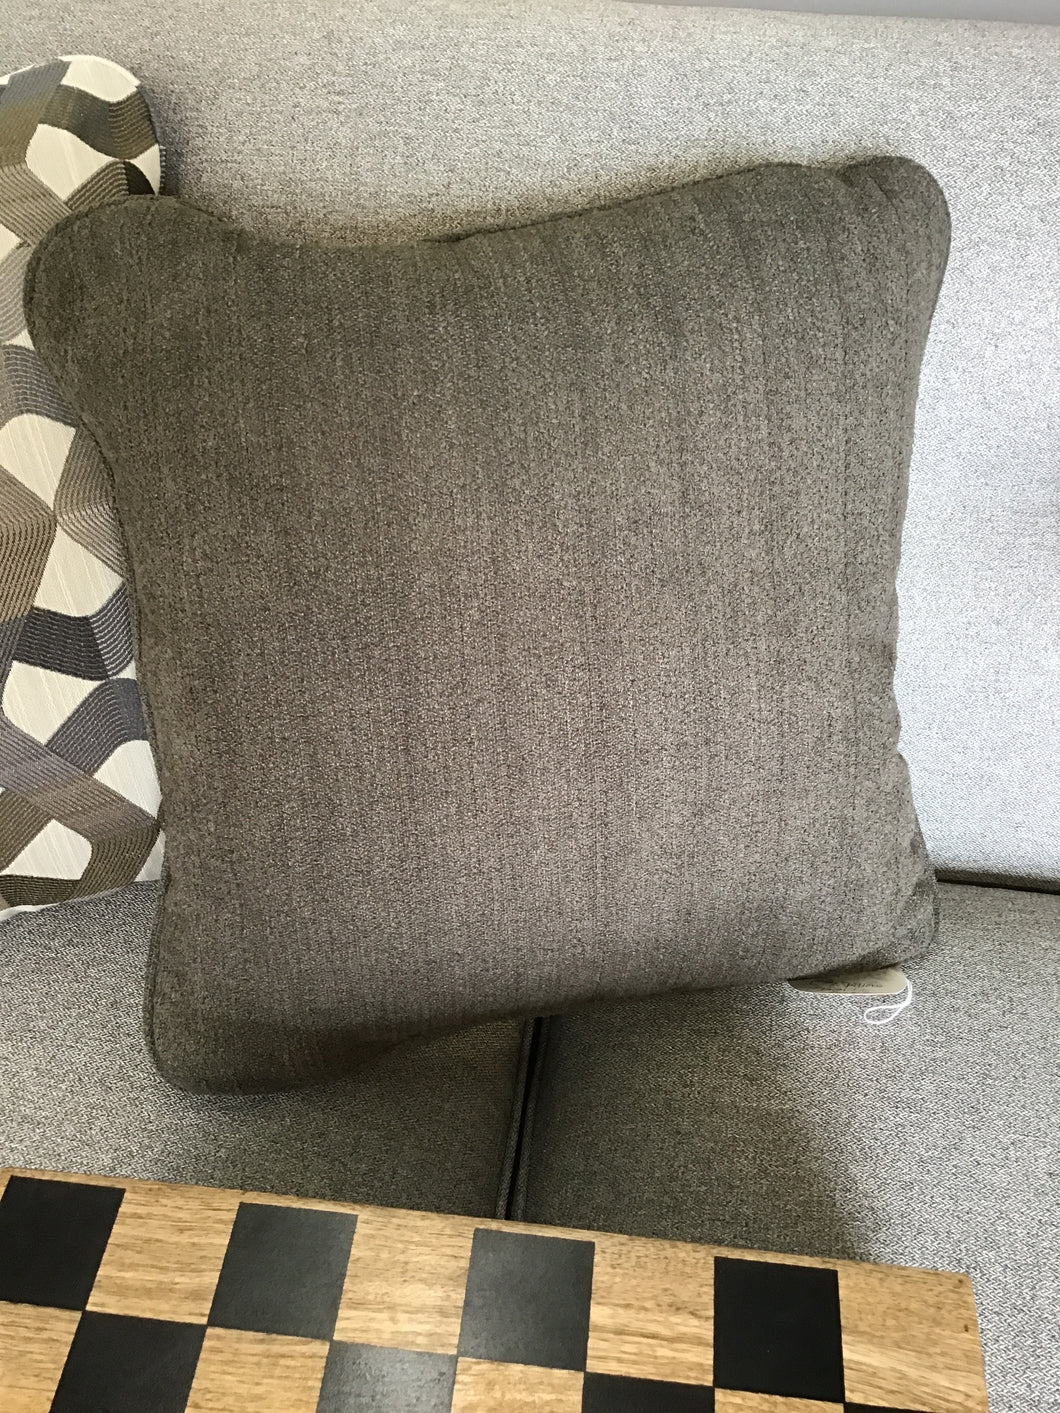 Throw Pillow by La-Z-Boy Furniture D134756